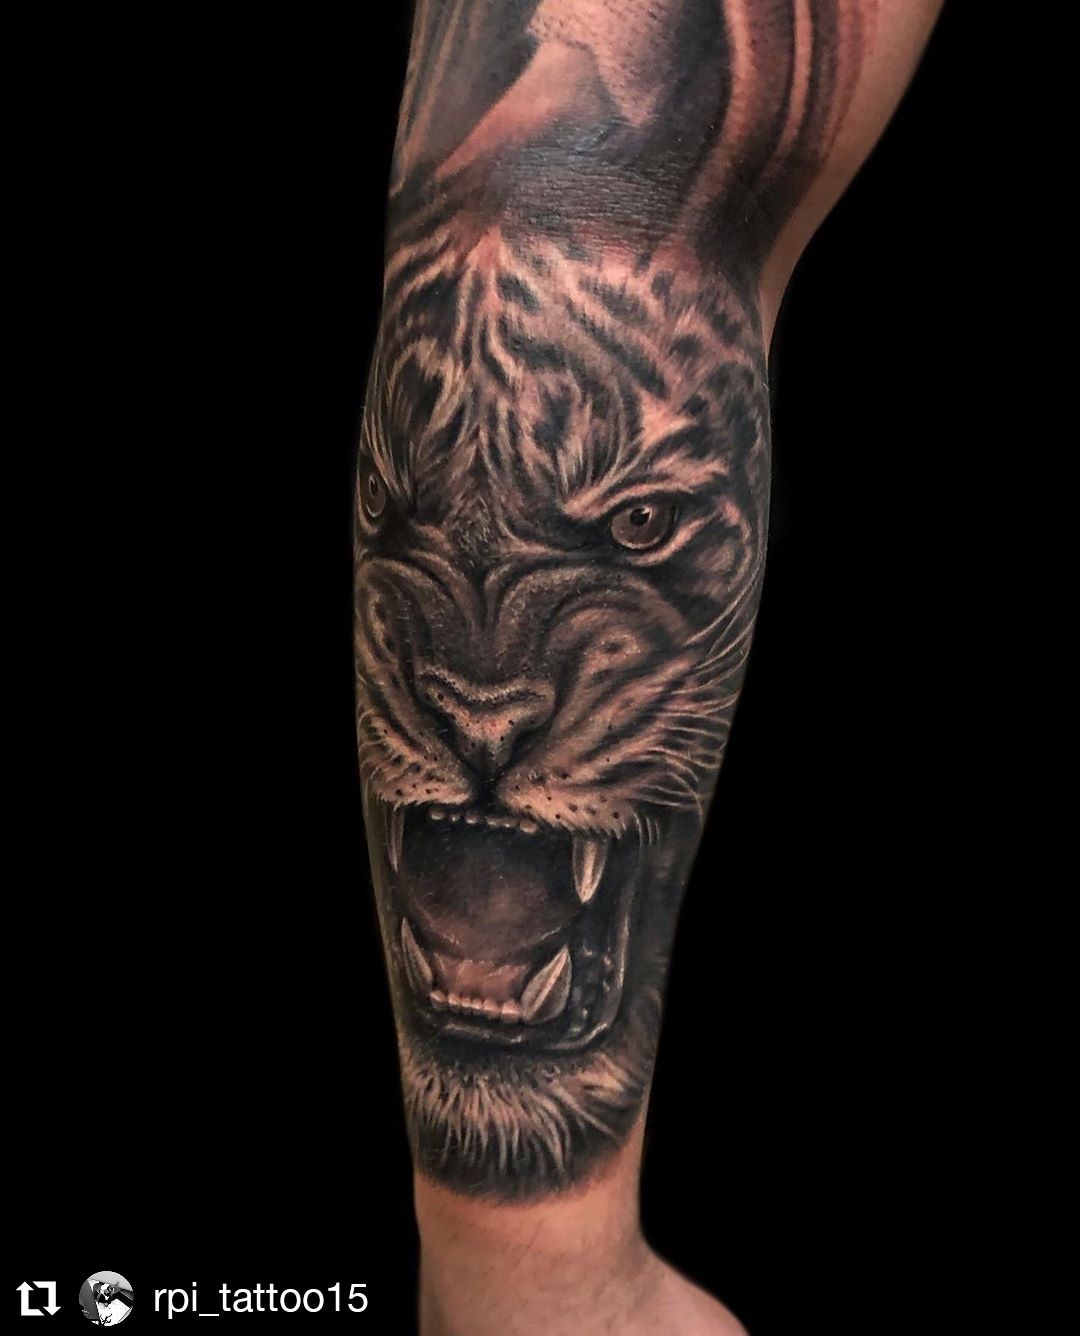 Alkar tetoválás, Állat tetoválás, Fekete fehér tetoválás, Portré tetoválás, Realisztikus tetoválás